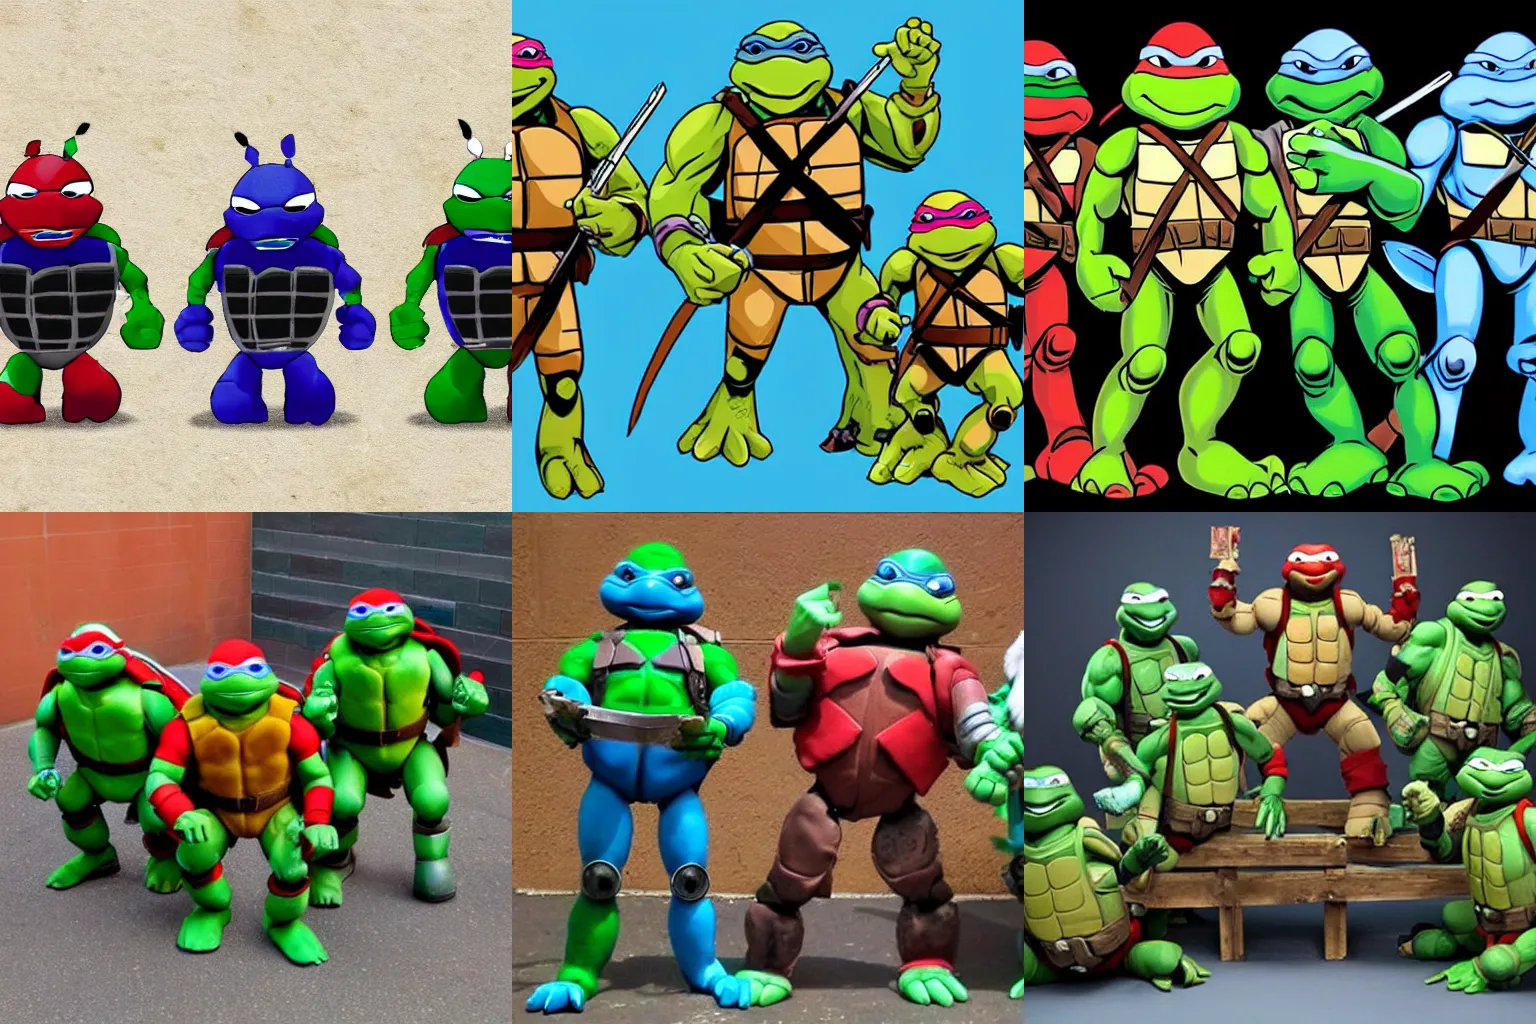 Prompt: teenage mutant ninja turtles robots